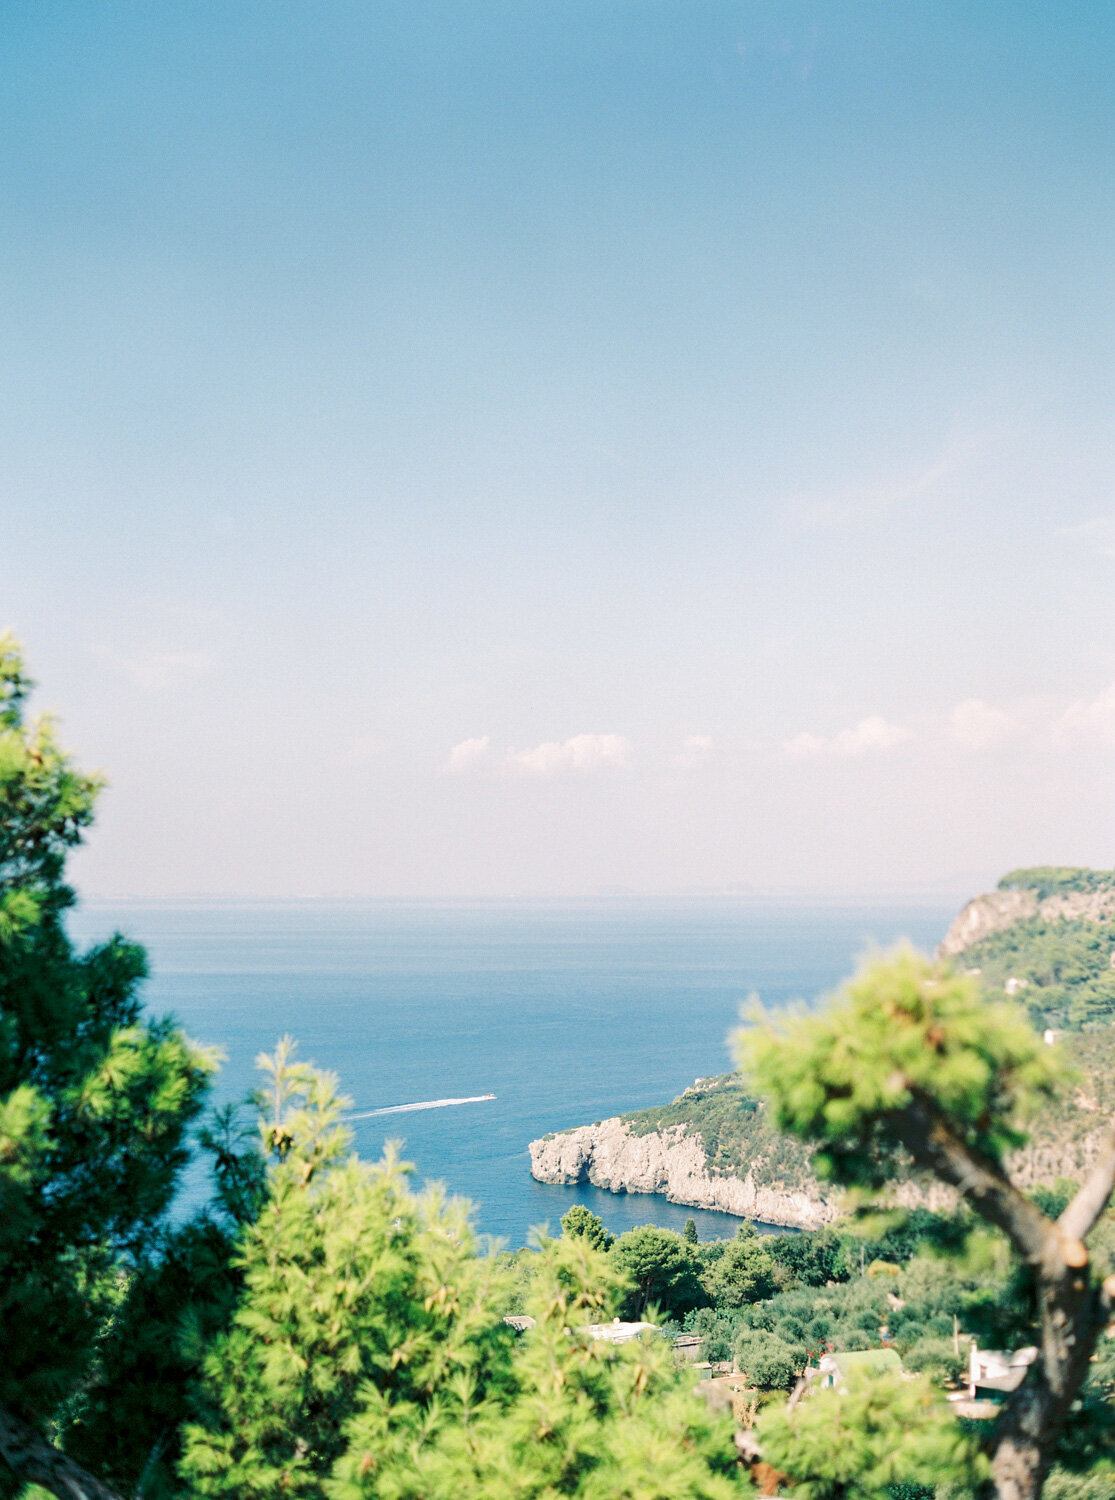 Wonderful view over the sea in Capri